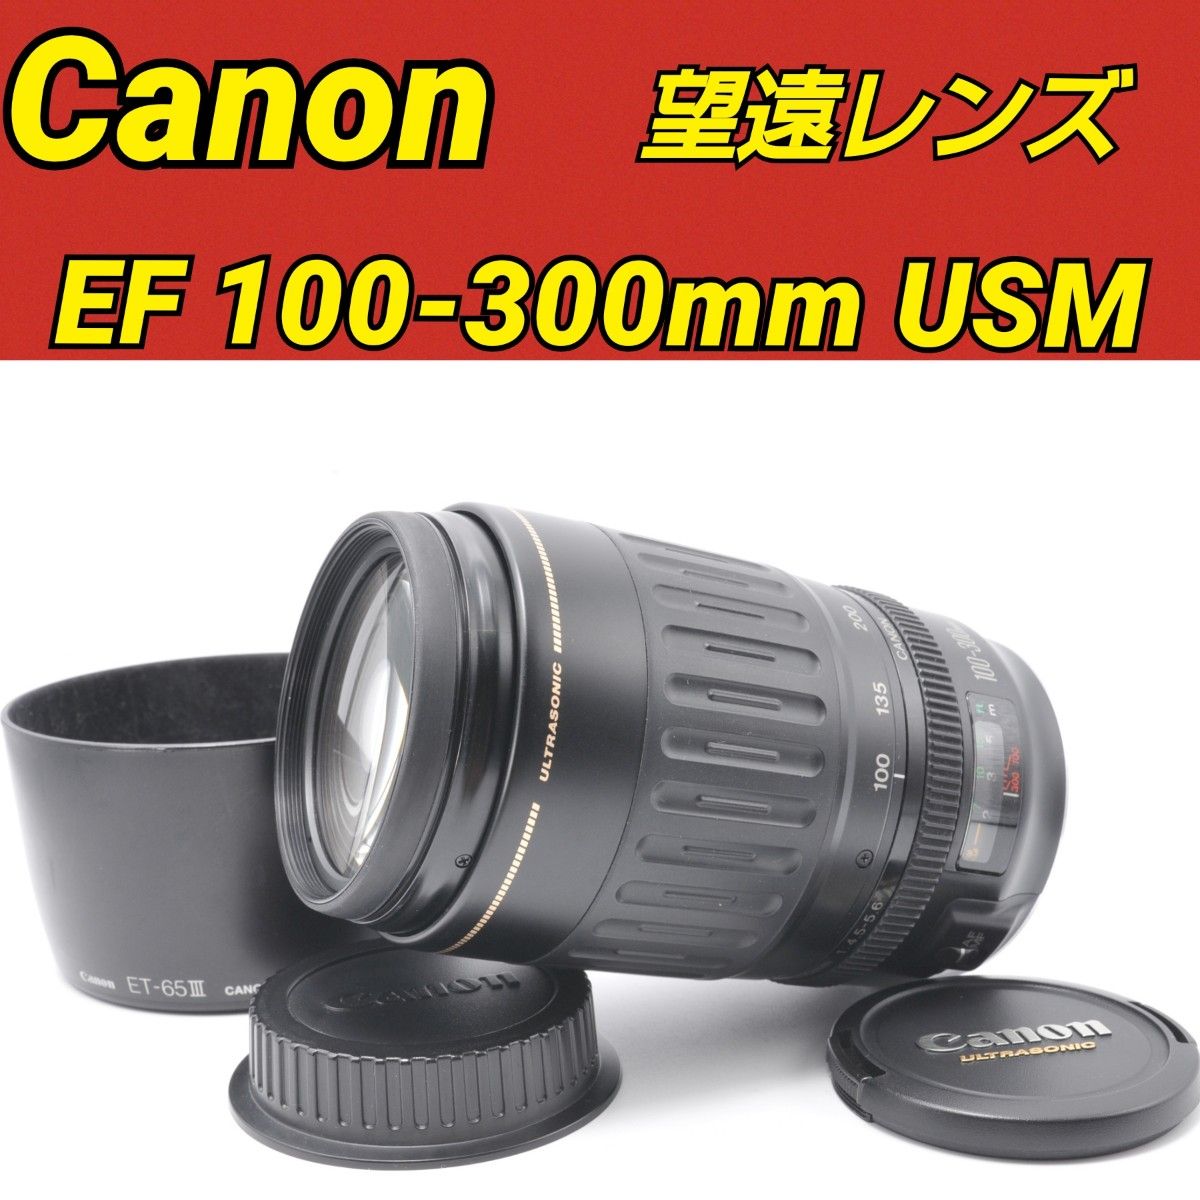 望遠レンズ キヤノン Canon EF100-300 超望遠レンズセット-